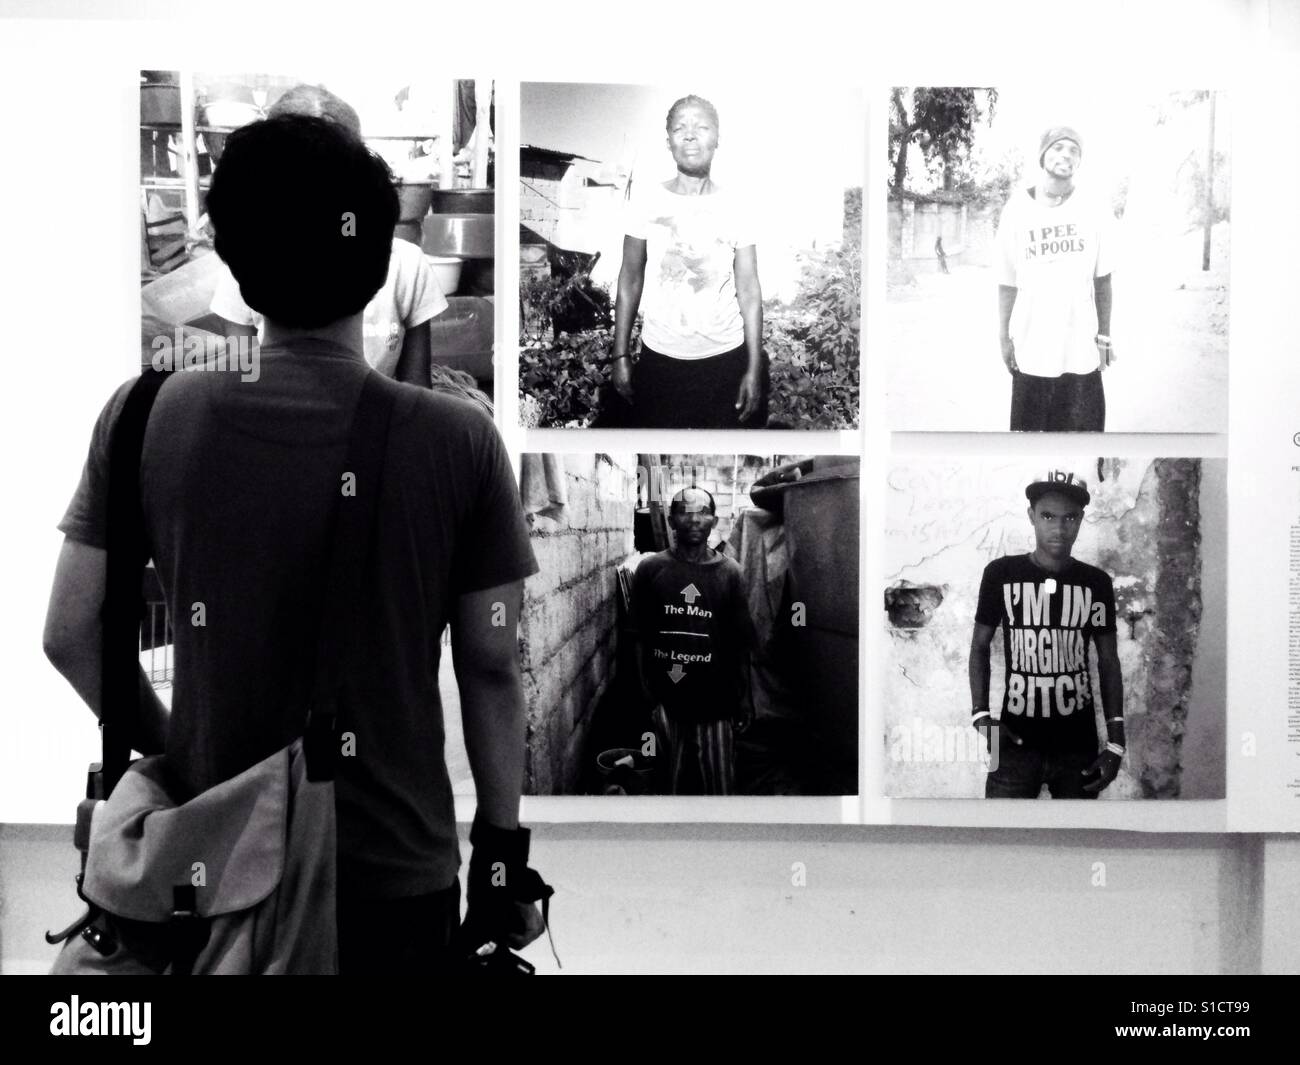 Mann Fast-Fashion-Ausstellung Fotos betrachten. Jakarta, Indonesien. -Schwarz / weiß Stockfoto